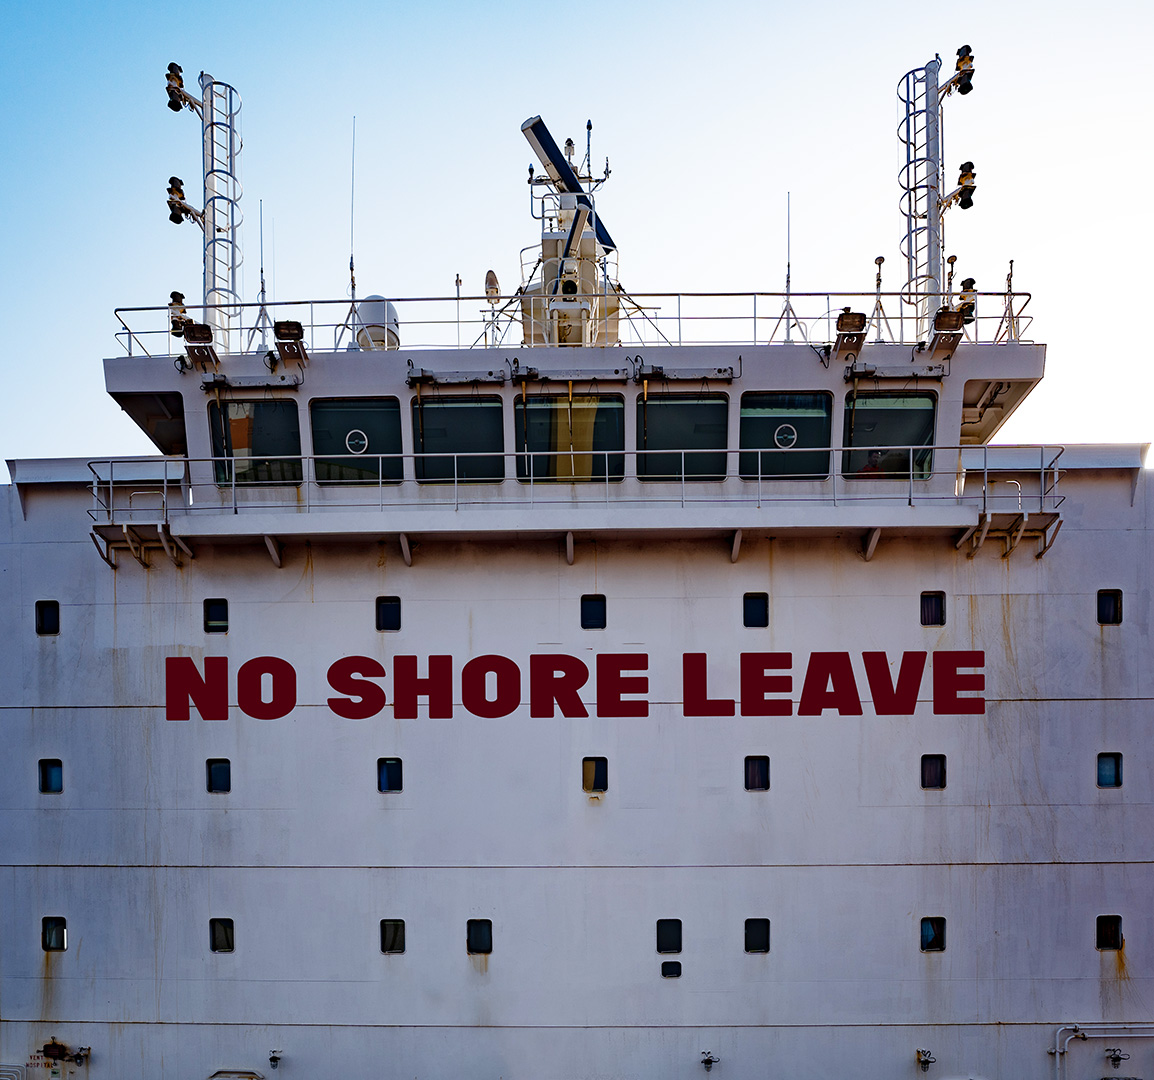 Corona has gone, but seafarers still locked on board.